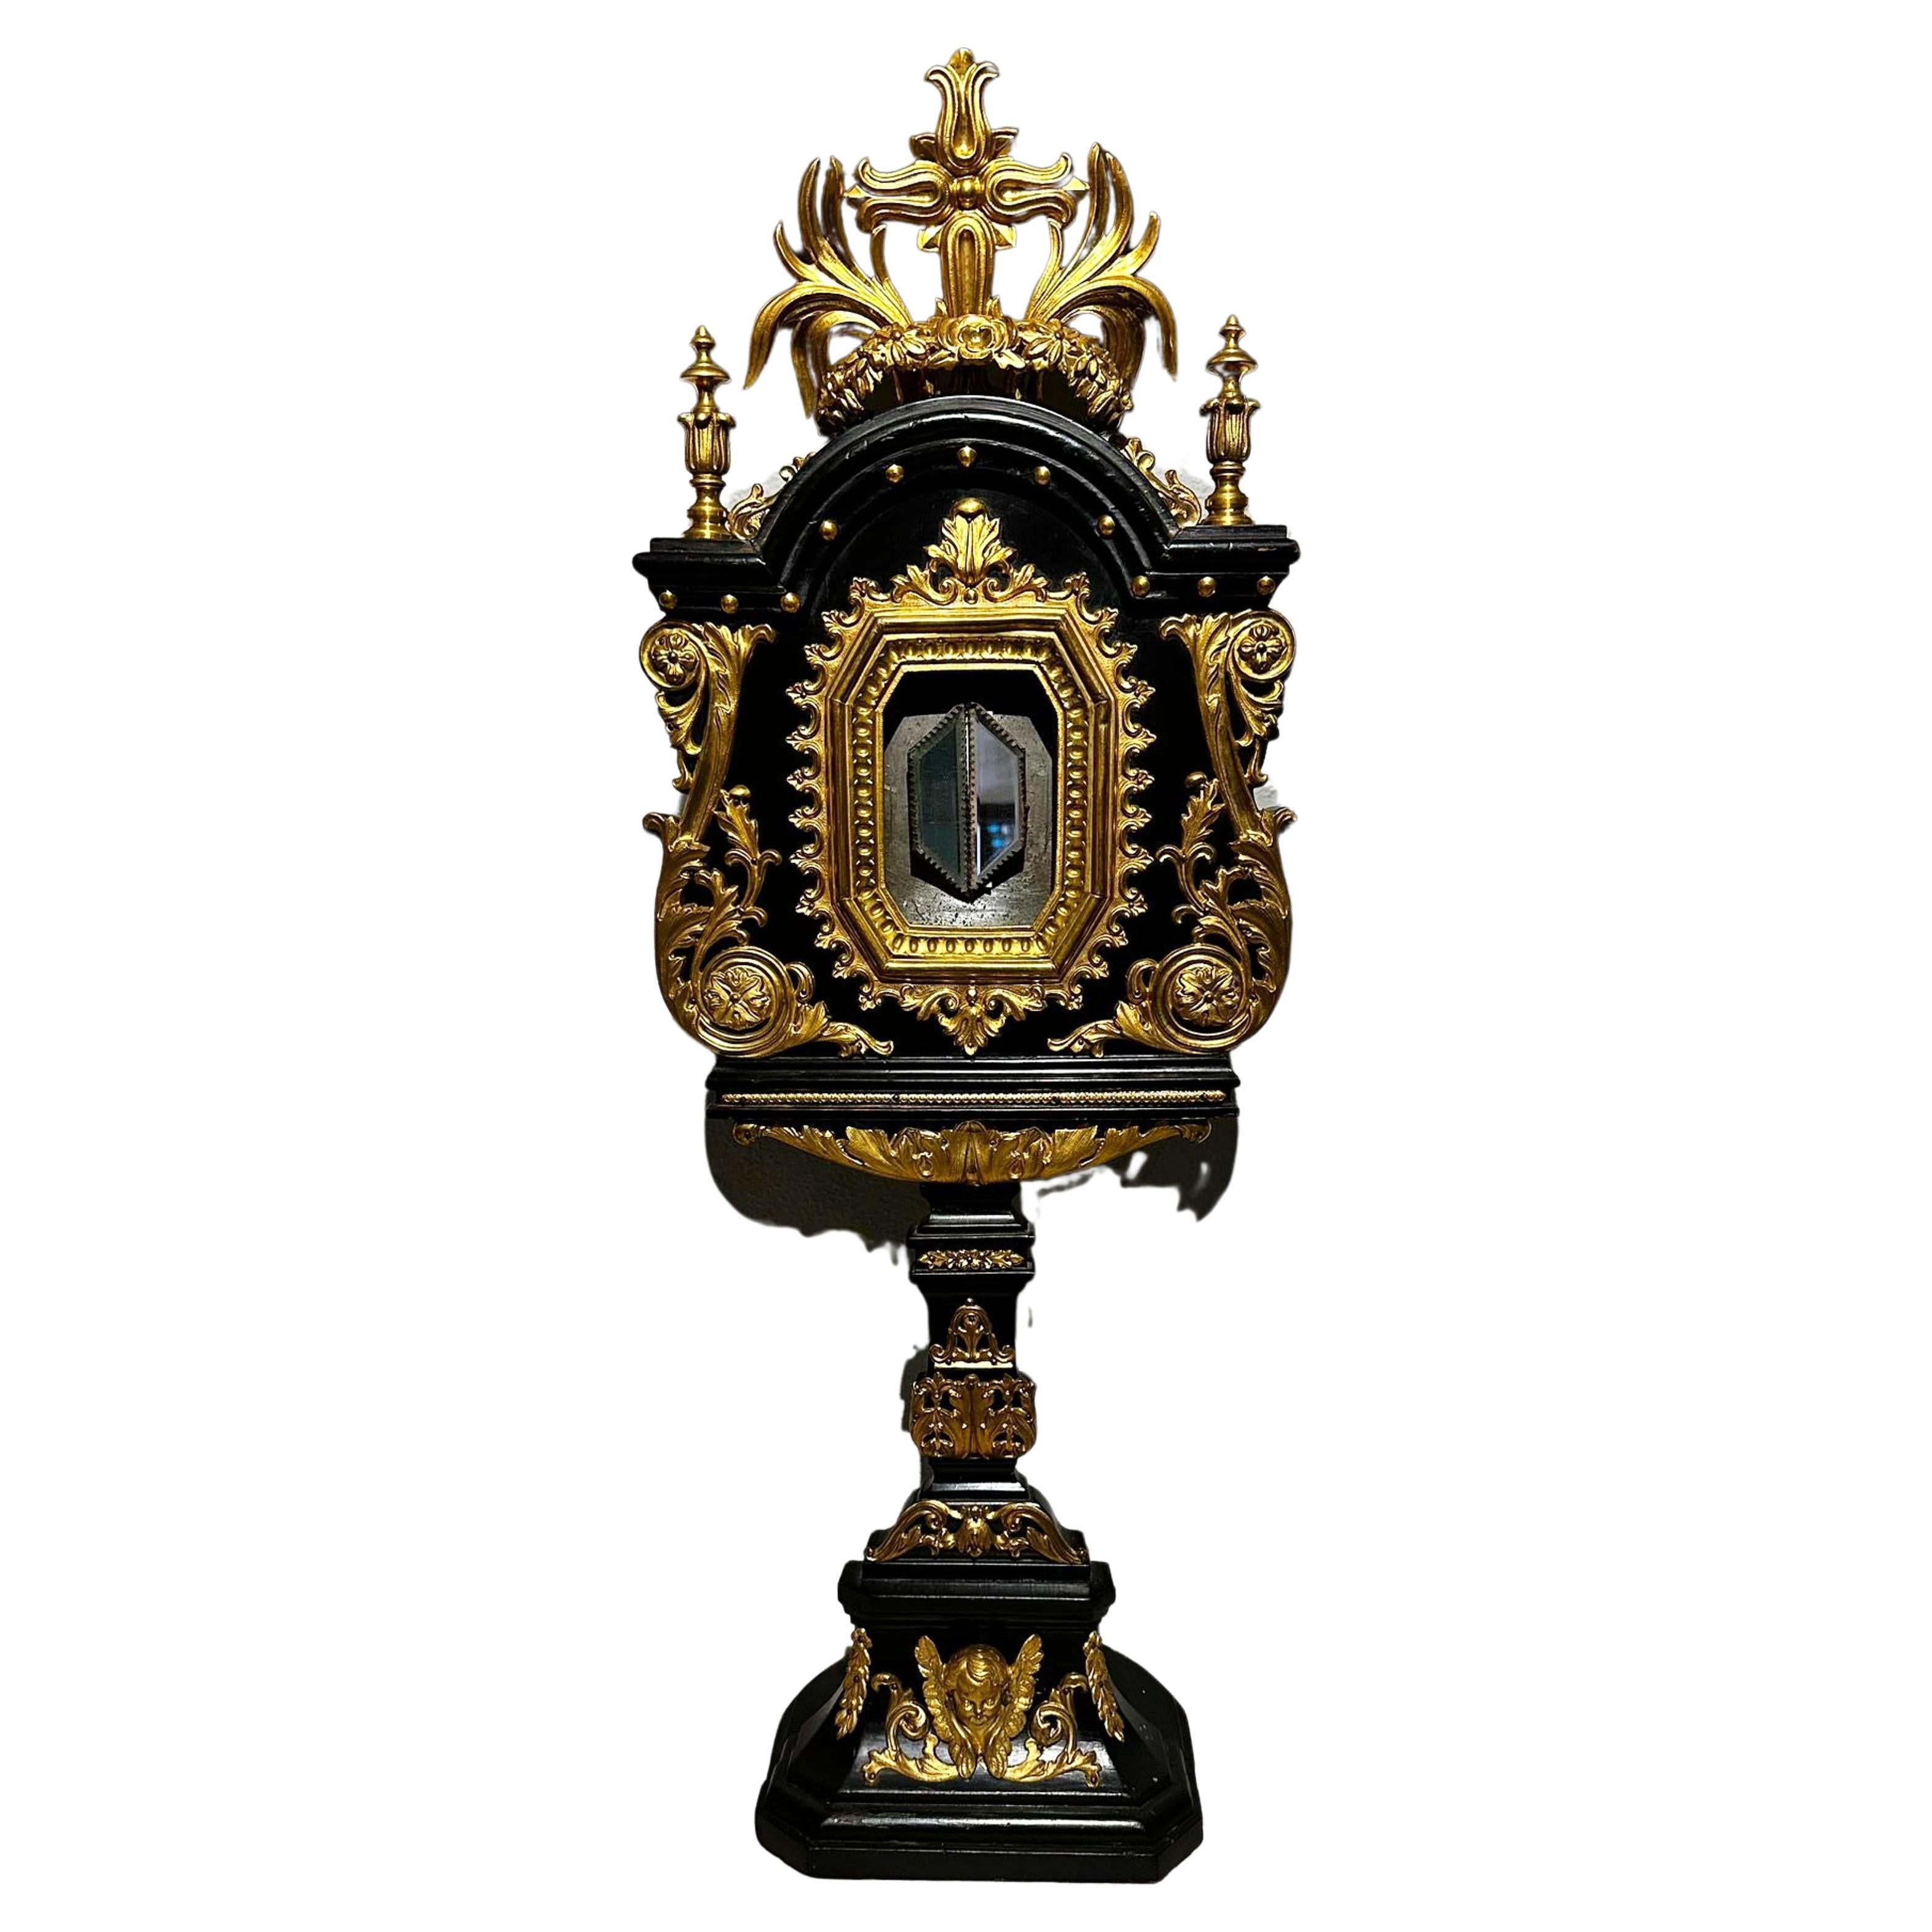 Grand ostensoir italien en bois ébène du 19ème siècle
avec des décorations en laiton doré. 
Style Renaissance. 
Dimensions : H 78 cm.
En bon état.